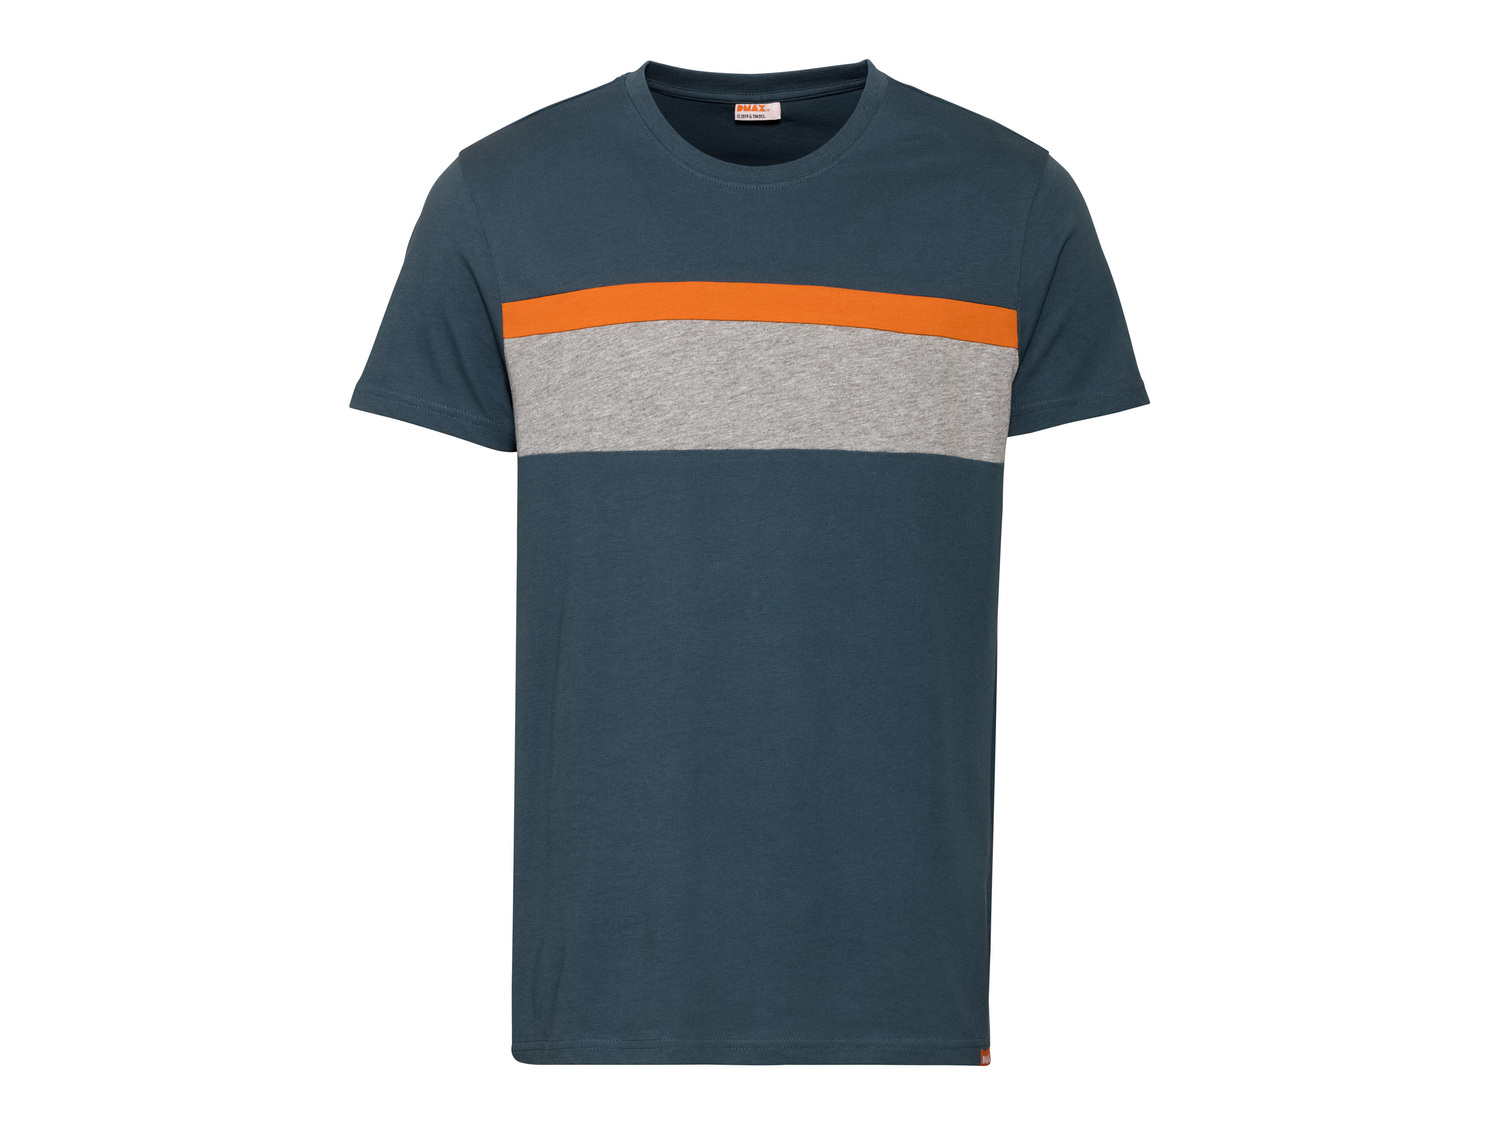 T-shirt da uomo DMAX Dmax, prezzo 4.99 &#8364; 
Misure: S-XL
Taglie disponibili

Caratteristiche

- ...